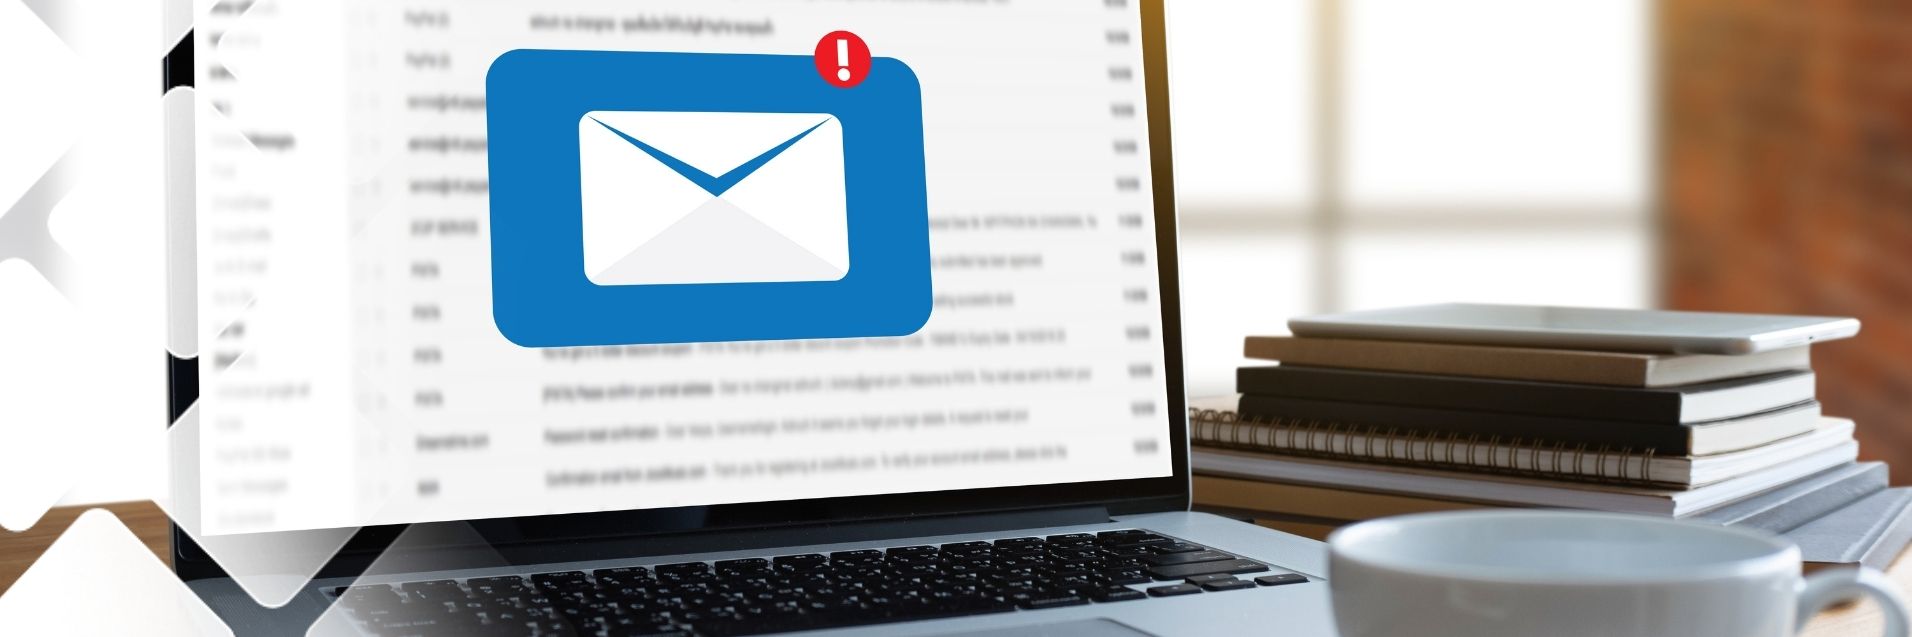 Datenschutz: E-Mail am PC